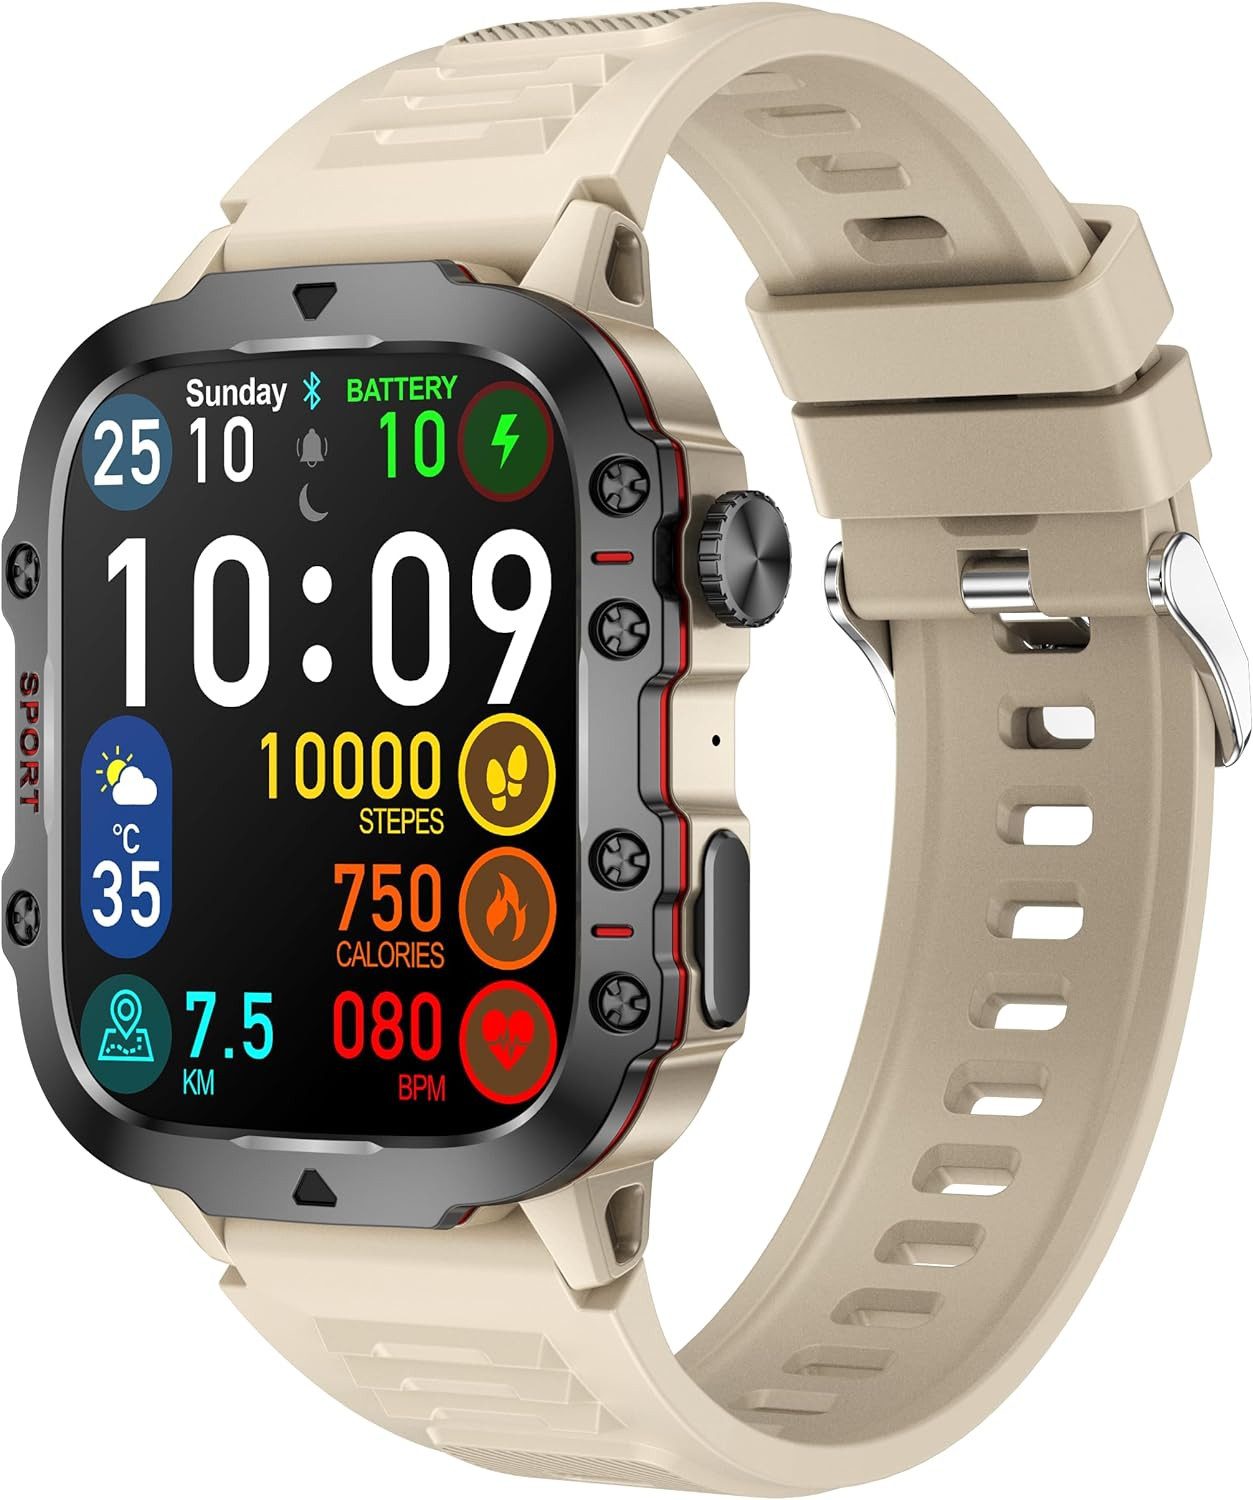 findtime Herzfrequenzüberwachung Smartwatch (1,85 Zoll, Android, iOS), mit Telefonfunktion Fitnessuhr Uhr mit Herzfrequenz, Blutdruckmessung